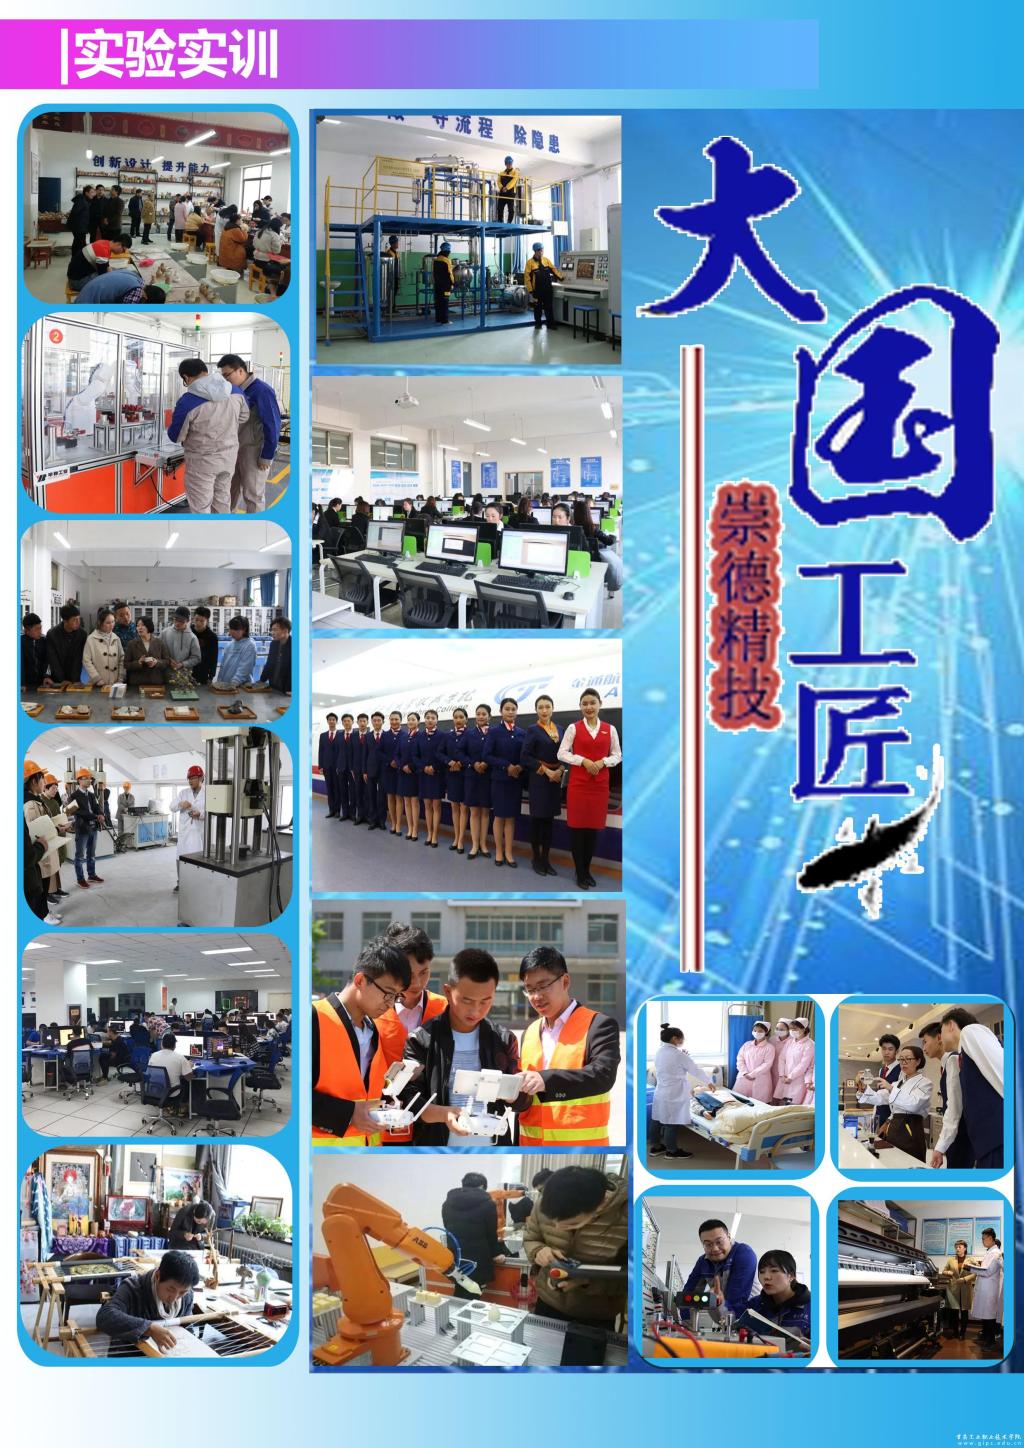 甘肃工业职业技术学院2020年报考指南